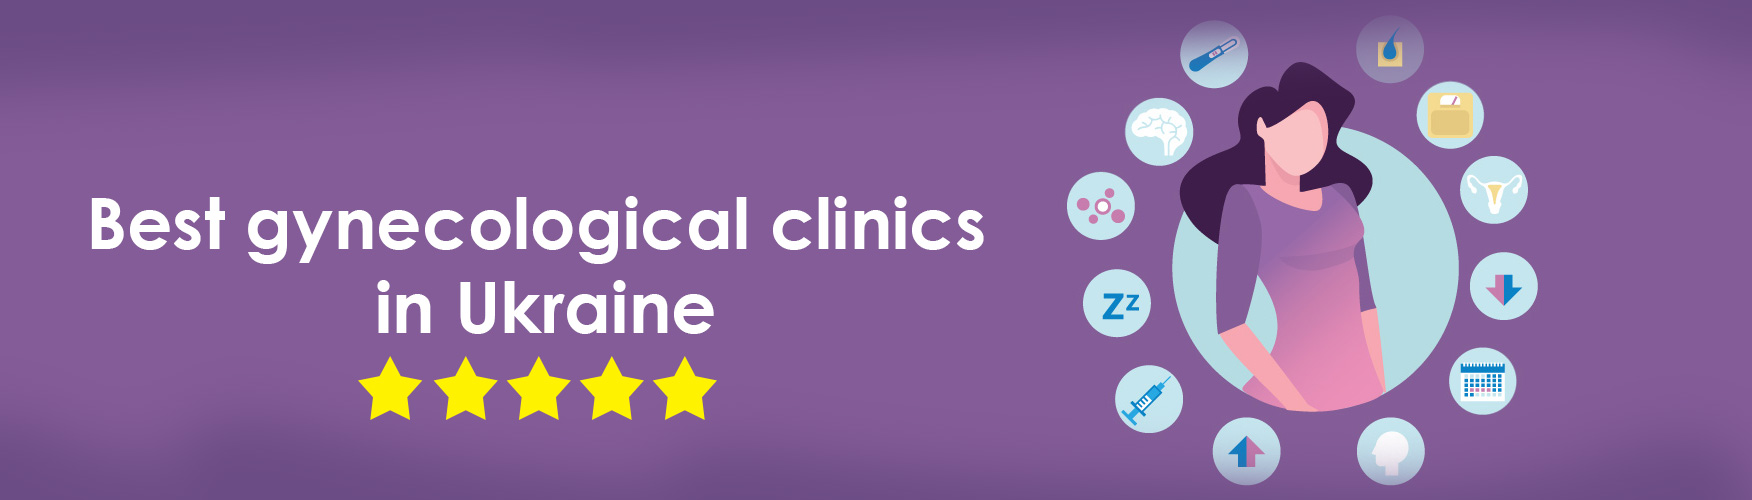 Лучшие гинекологические клиники в Украине